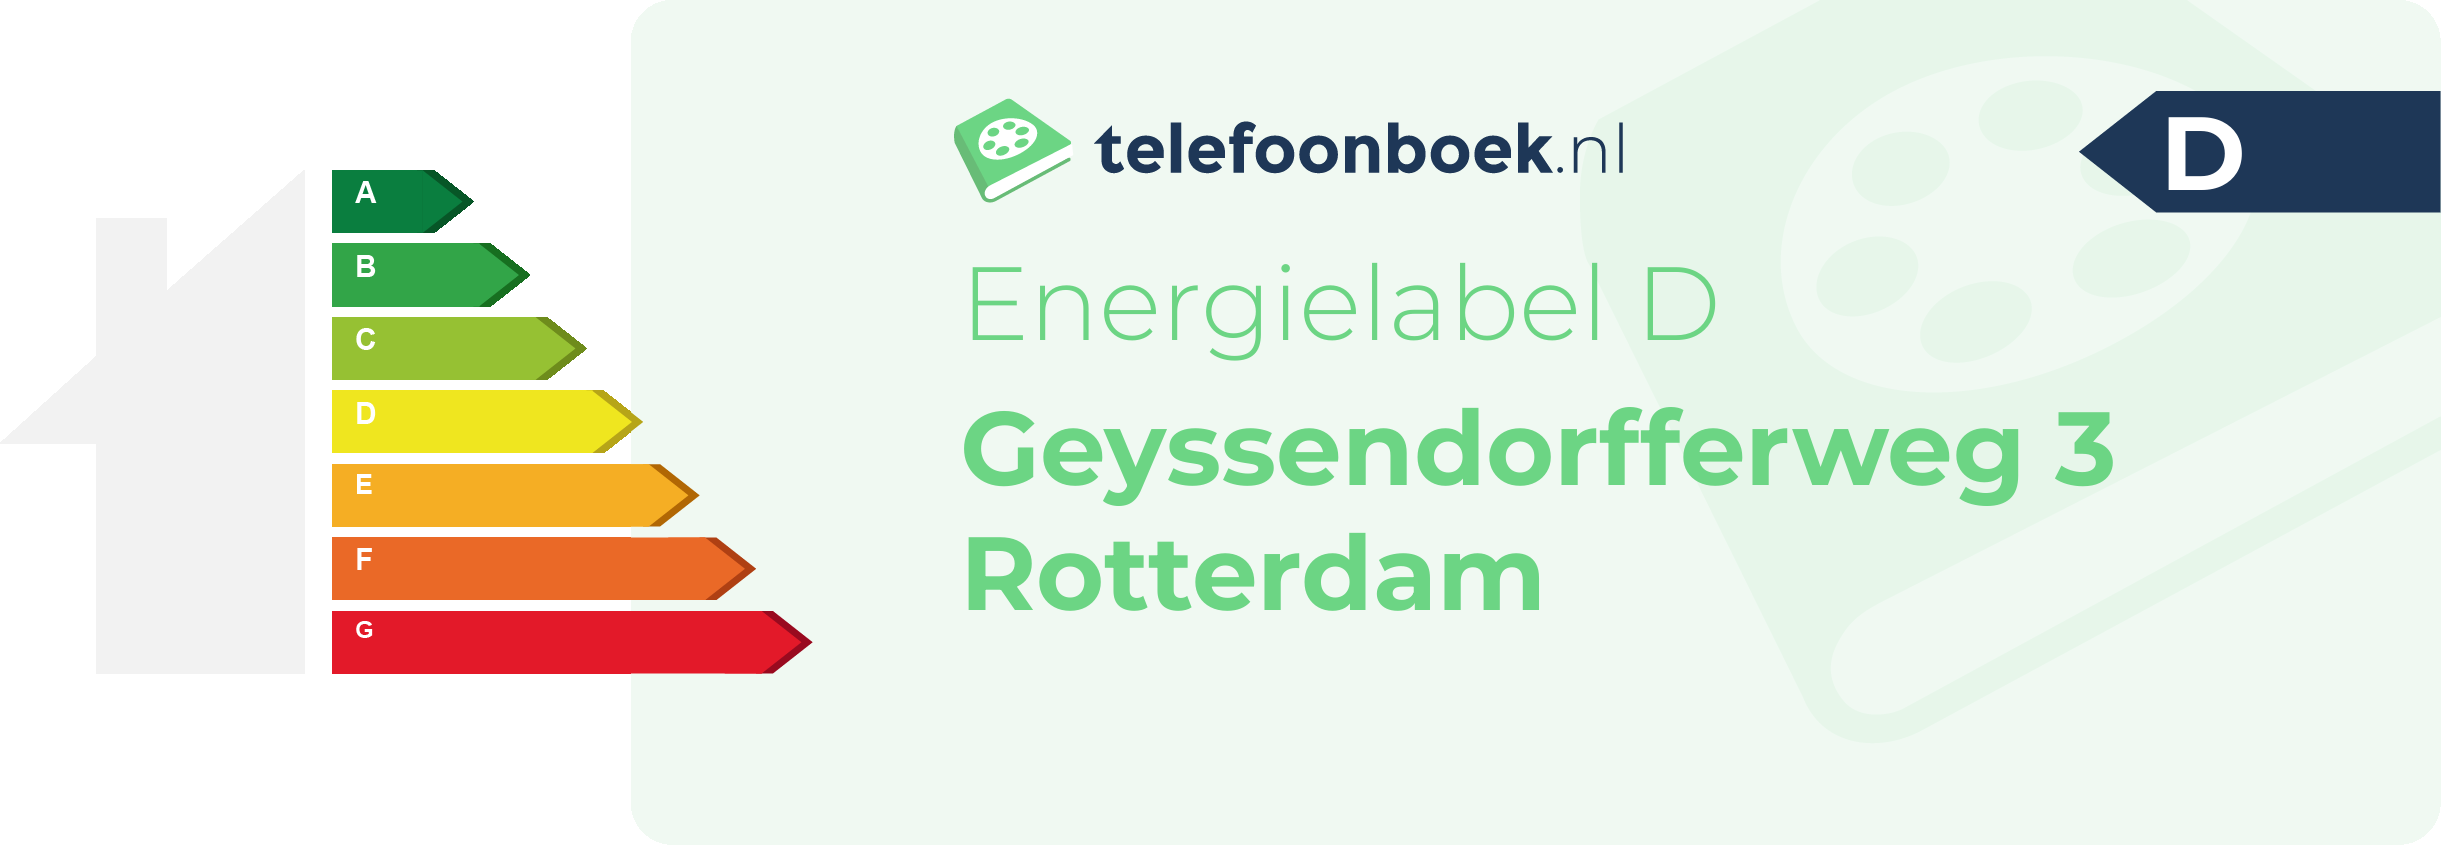 Energielabel Geyssendorfferweg 3 Rotterdam